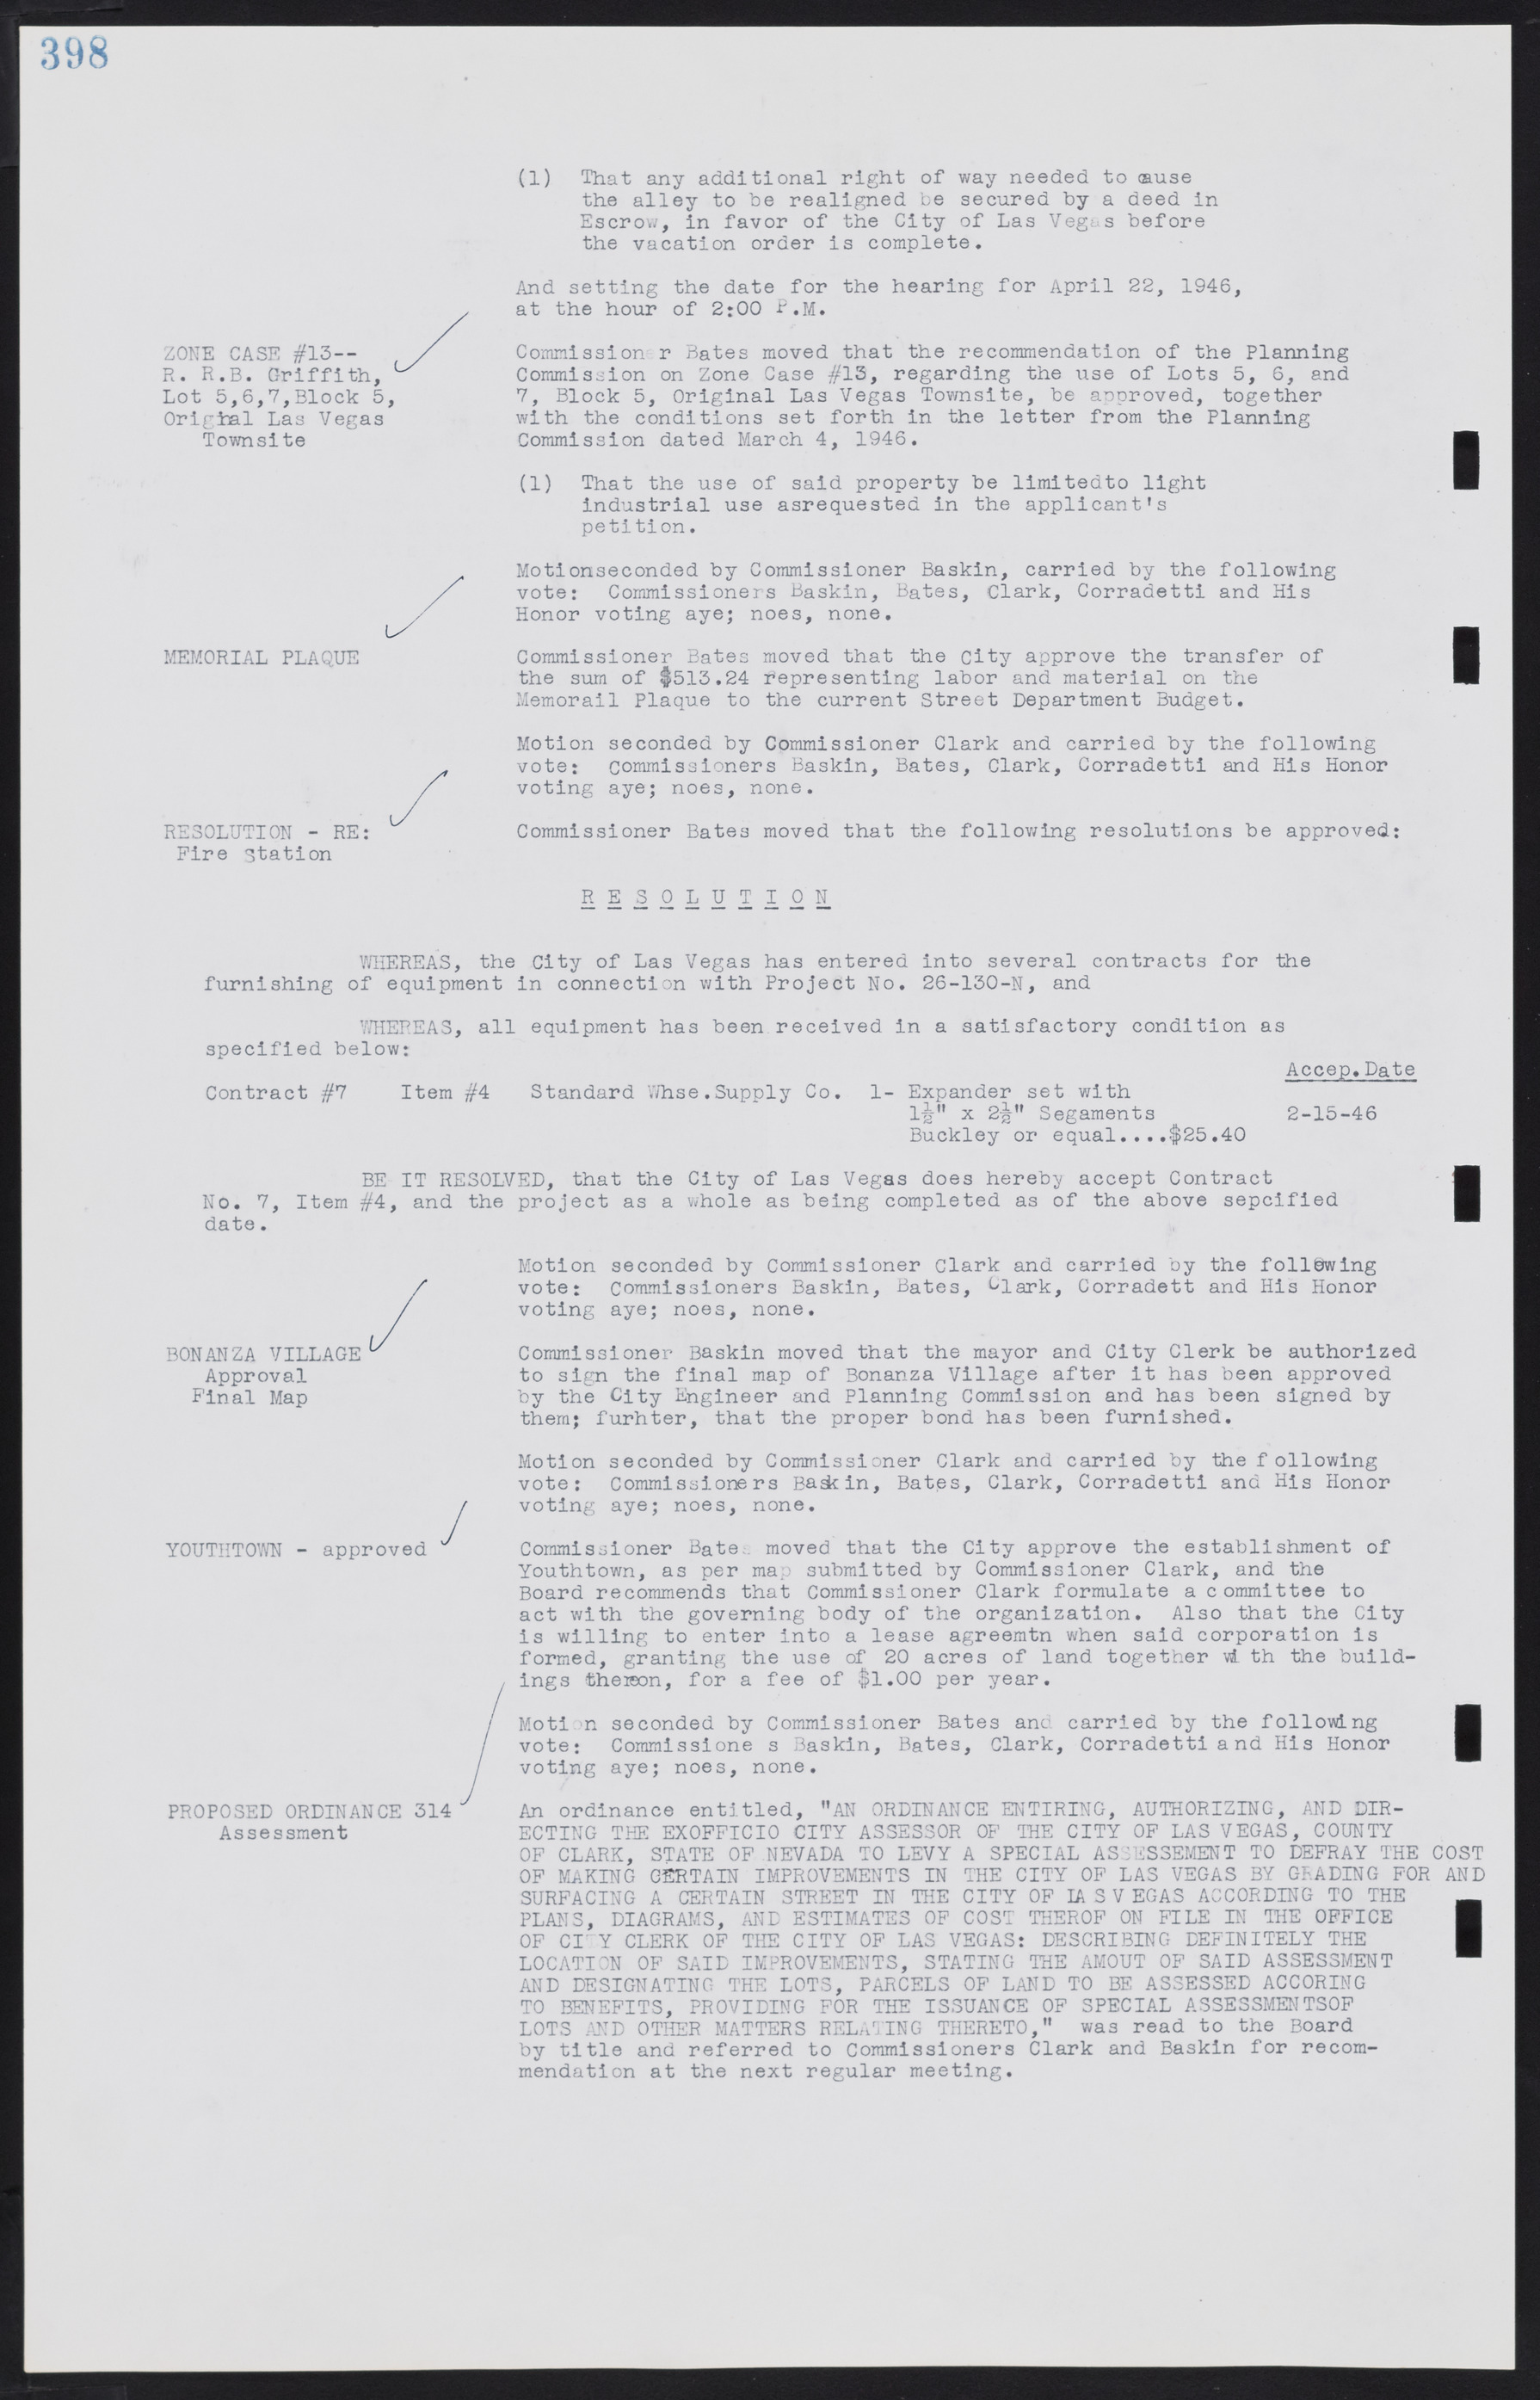 Las Vegas City Commission Minutes, August 11, 1942 to December 30, 1946, lvc000005-425